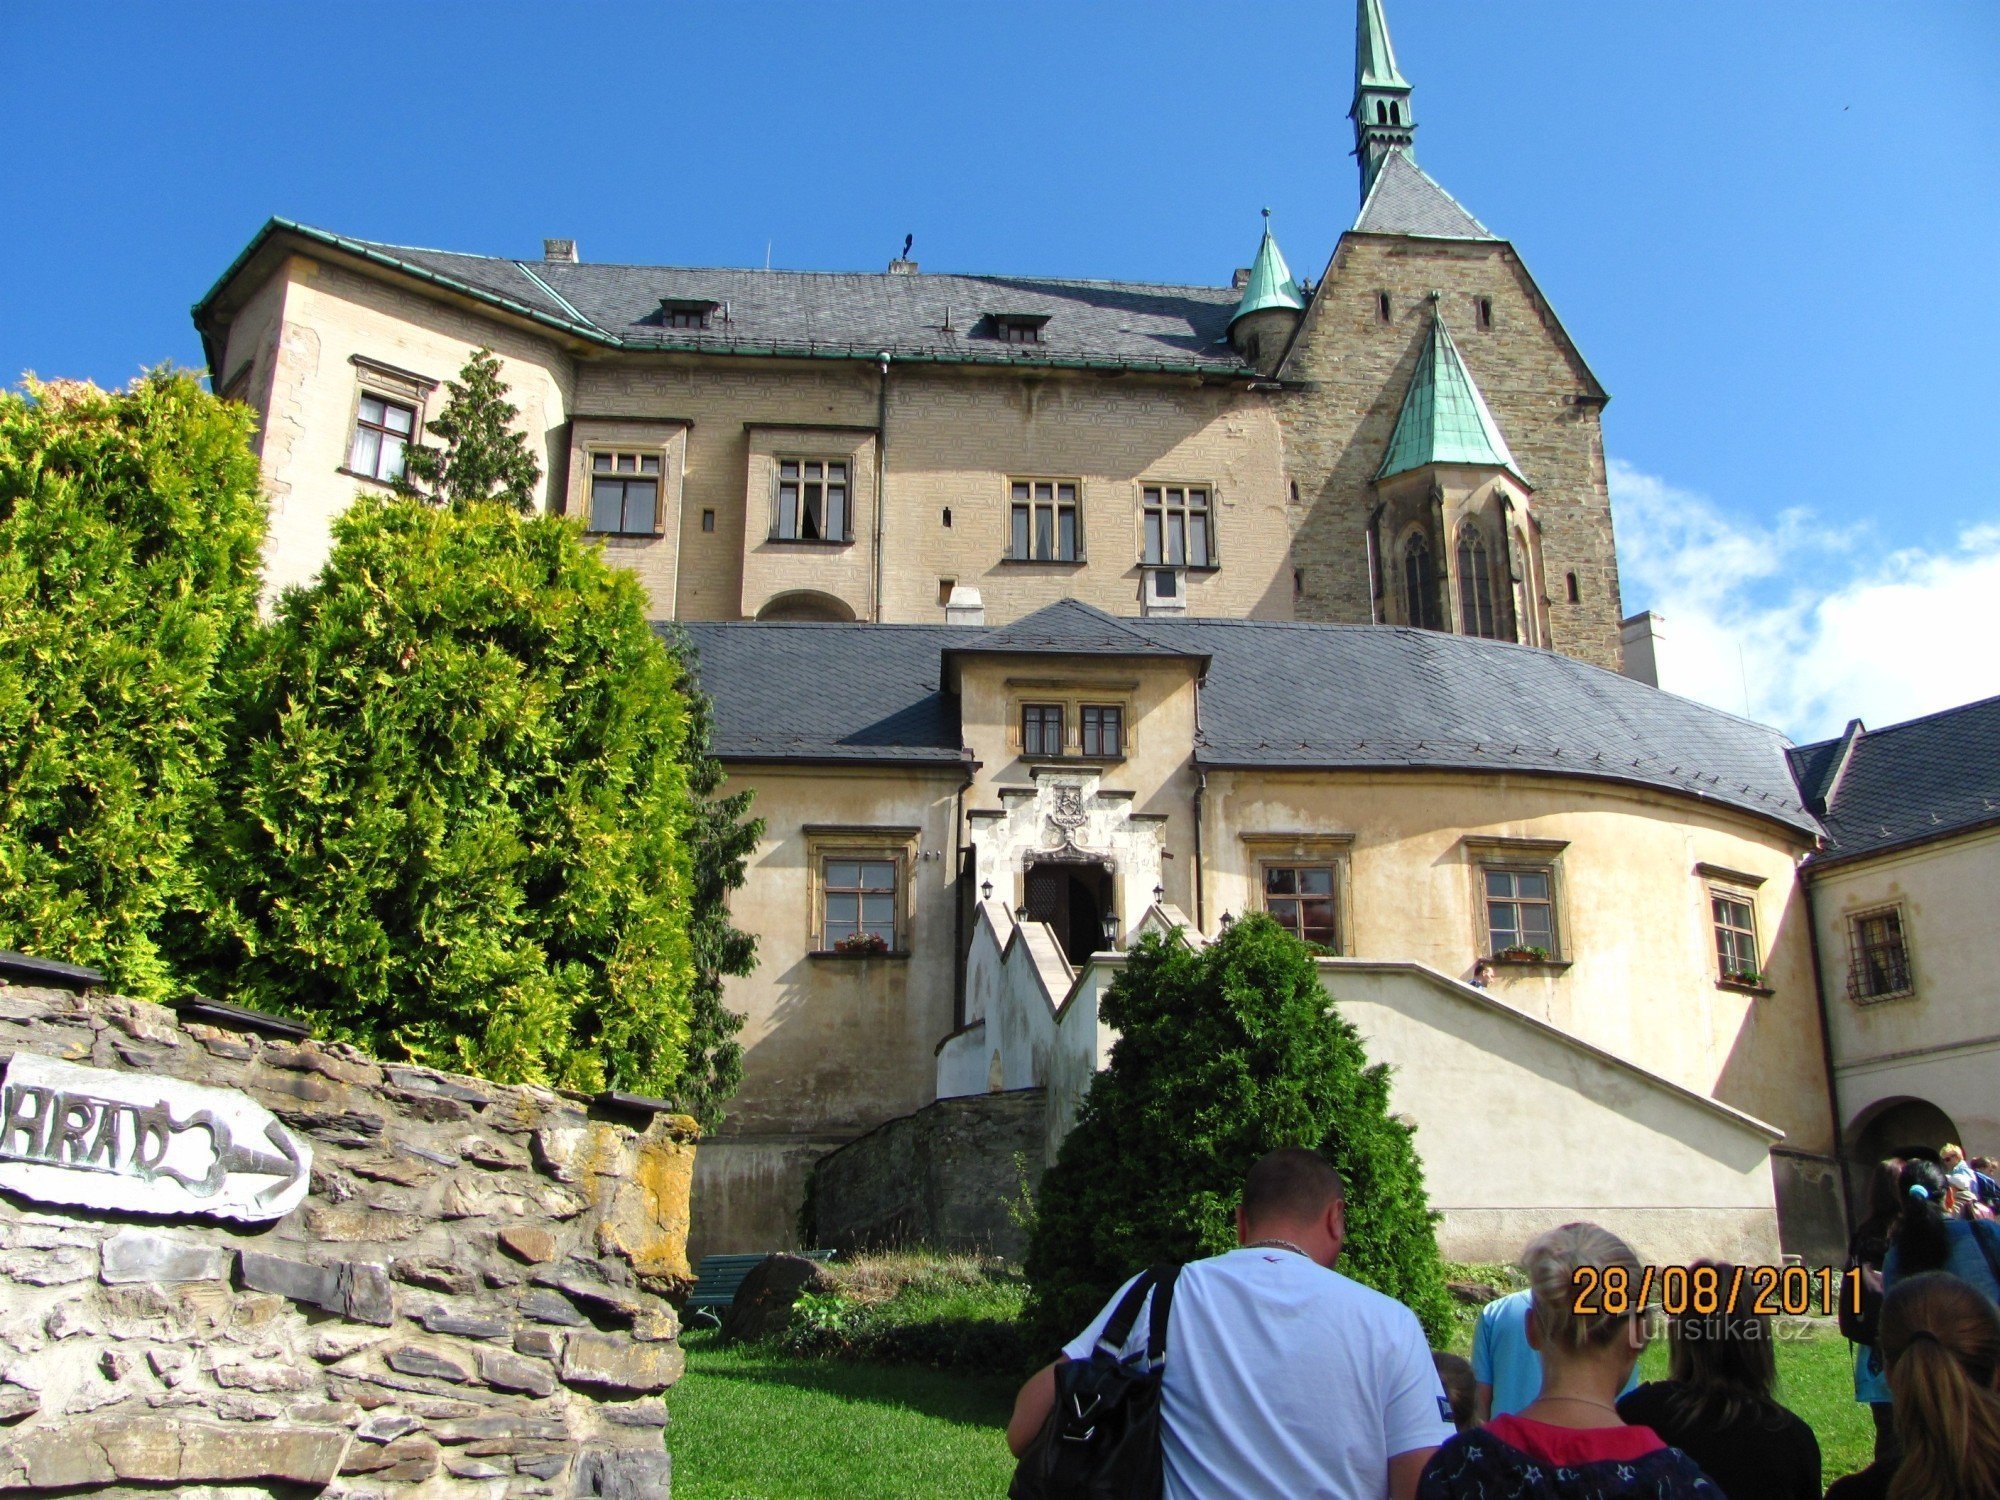 Farväl till semestern på slottet Šternberk